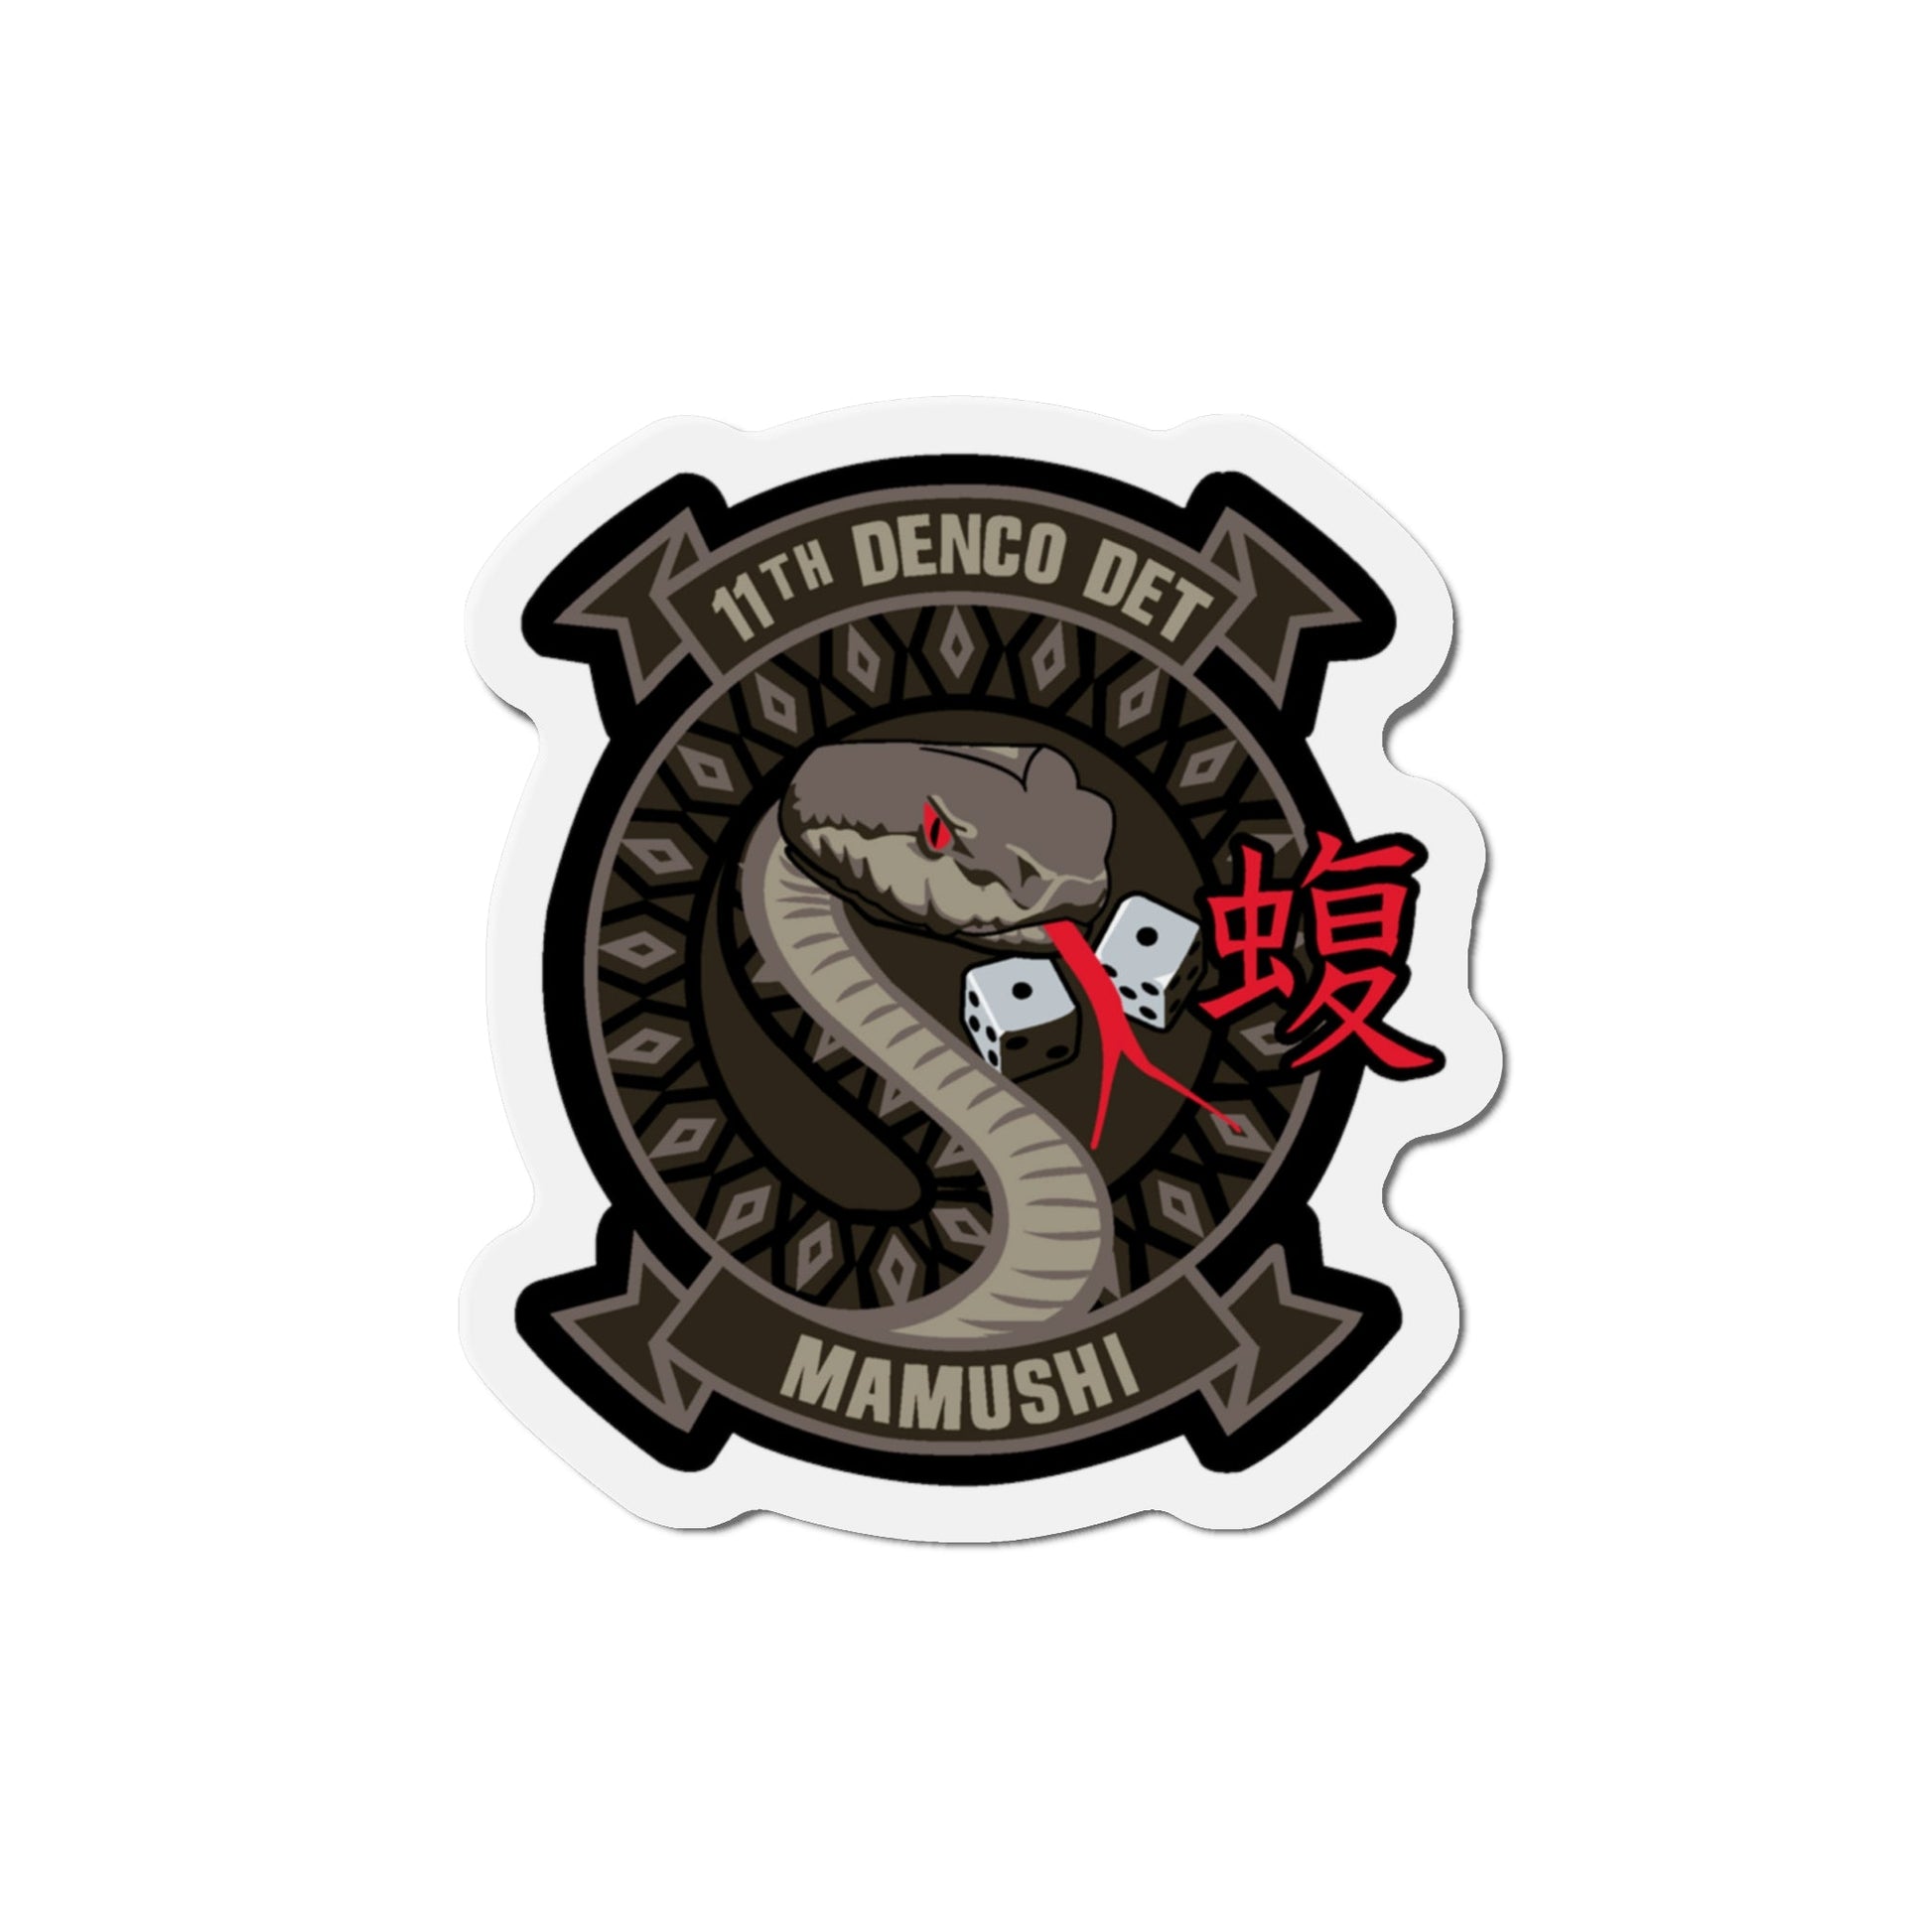 11th DENCO DET Mamushi (U.S. Navy) Die-Cut Magnet-6 × 6"-The Sticker Space